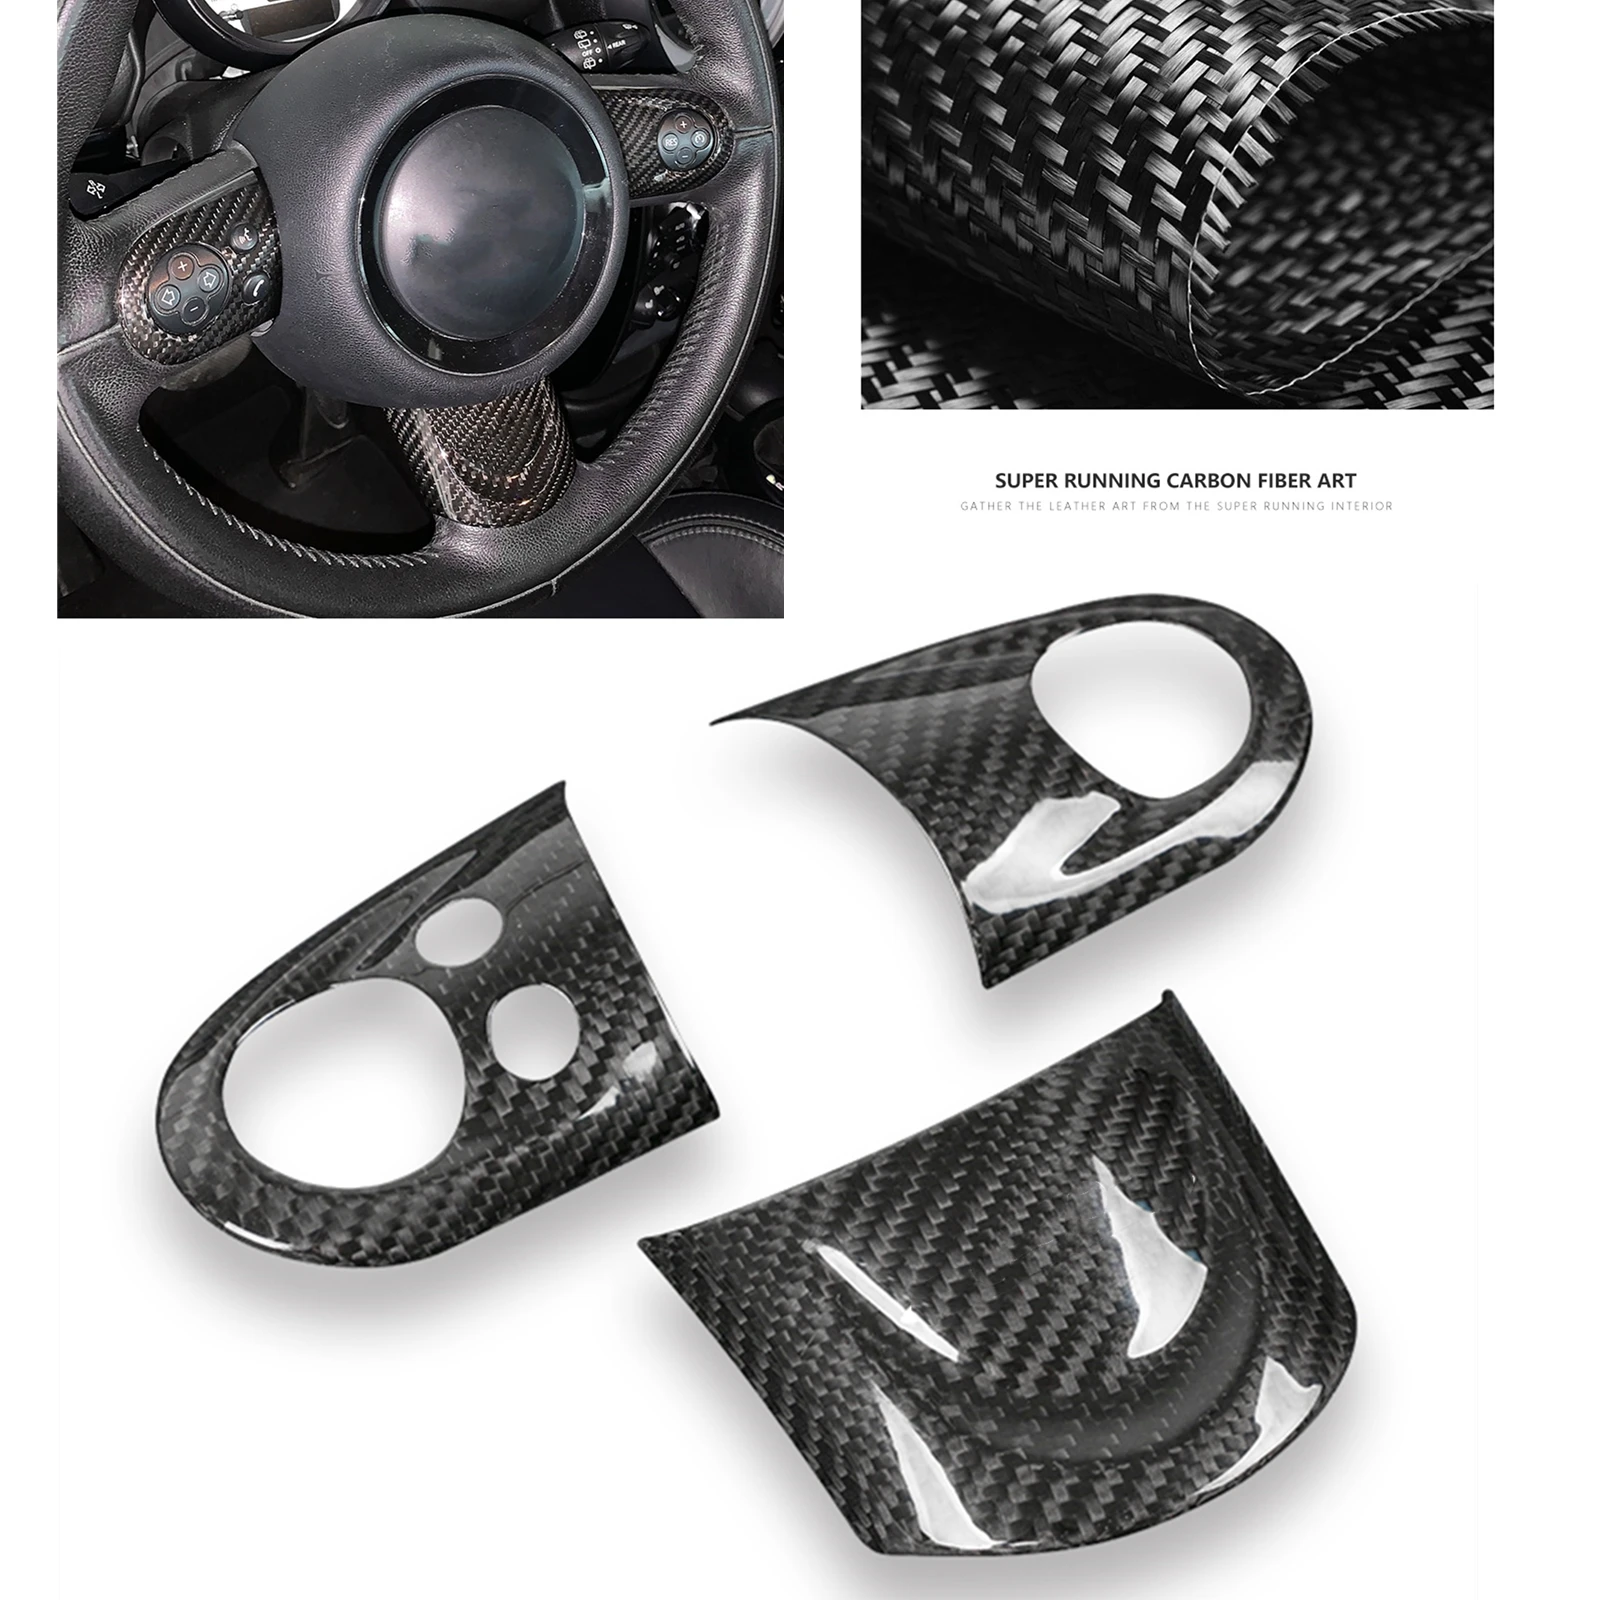 

Панель рулевого колеса для Mini Cooper R55 R56 R57 R58 R59 R60 R61, покрытие из углеродного волокна, декоративная рамка для салона автомобиля